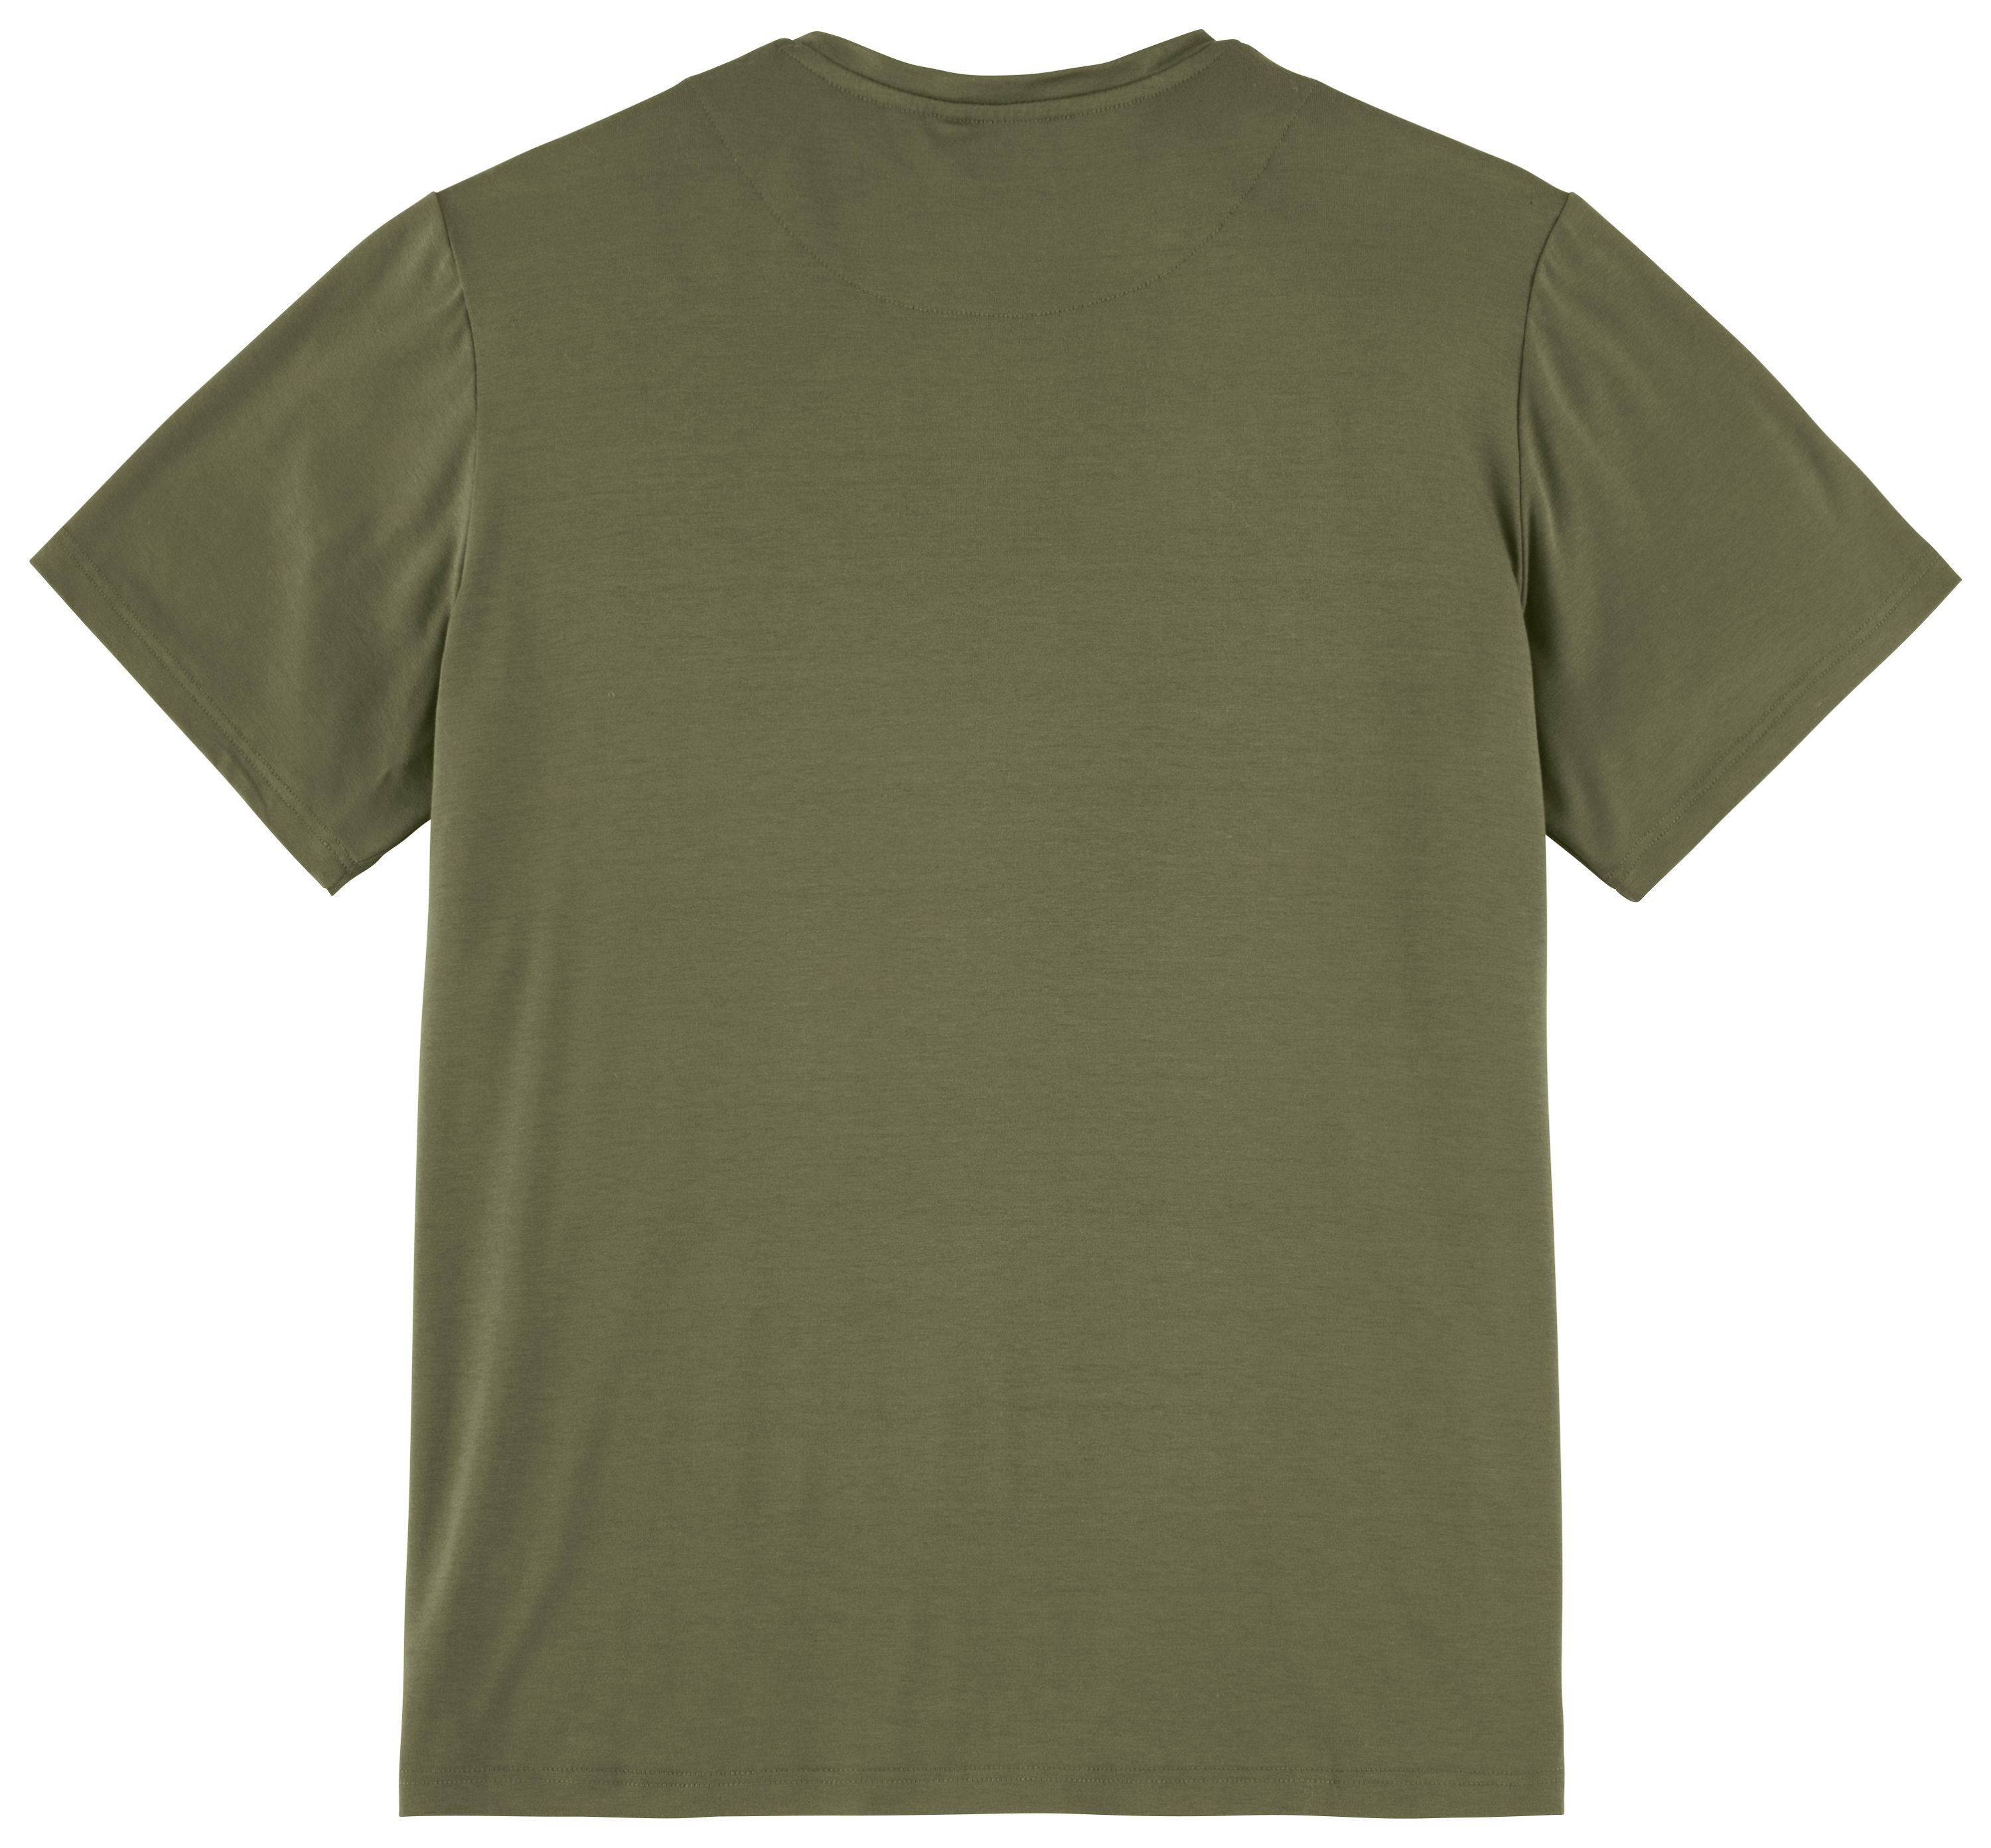 Die Rückseite des grünen Hudson-Shirts